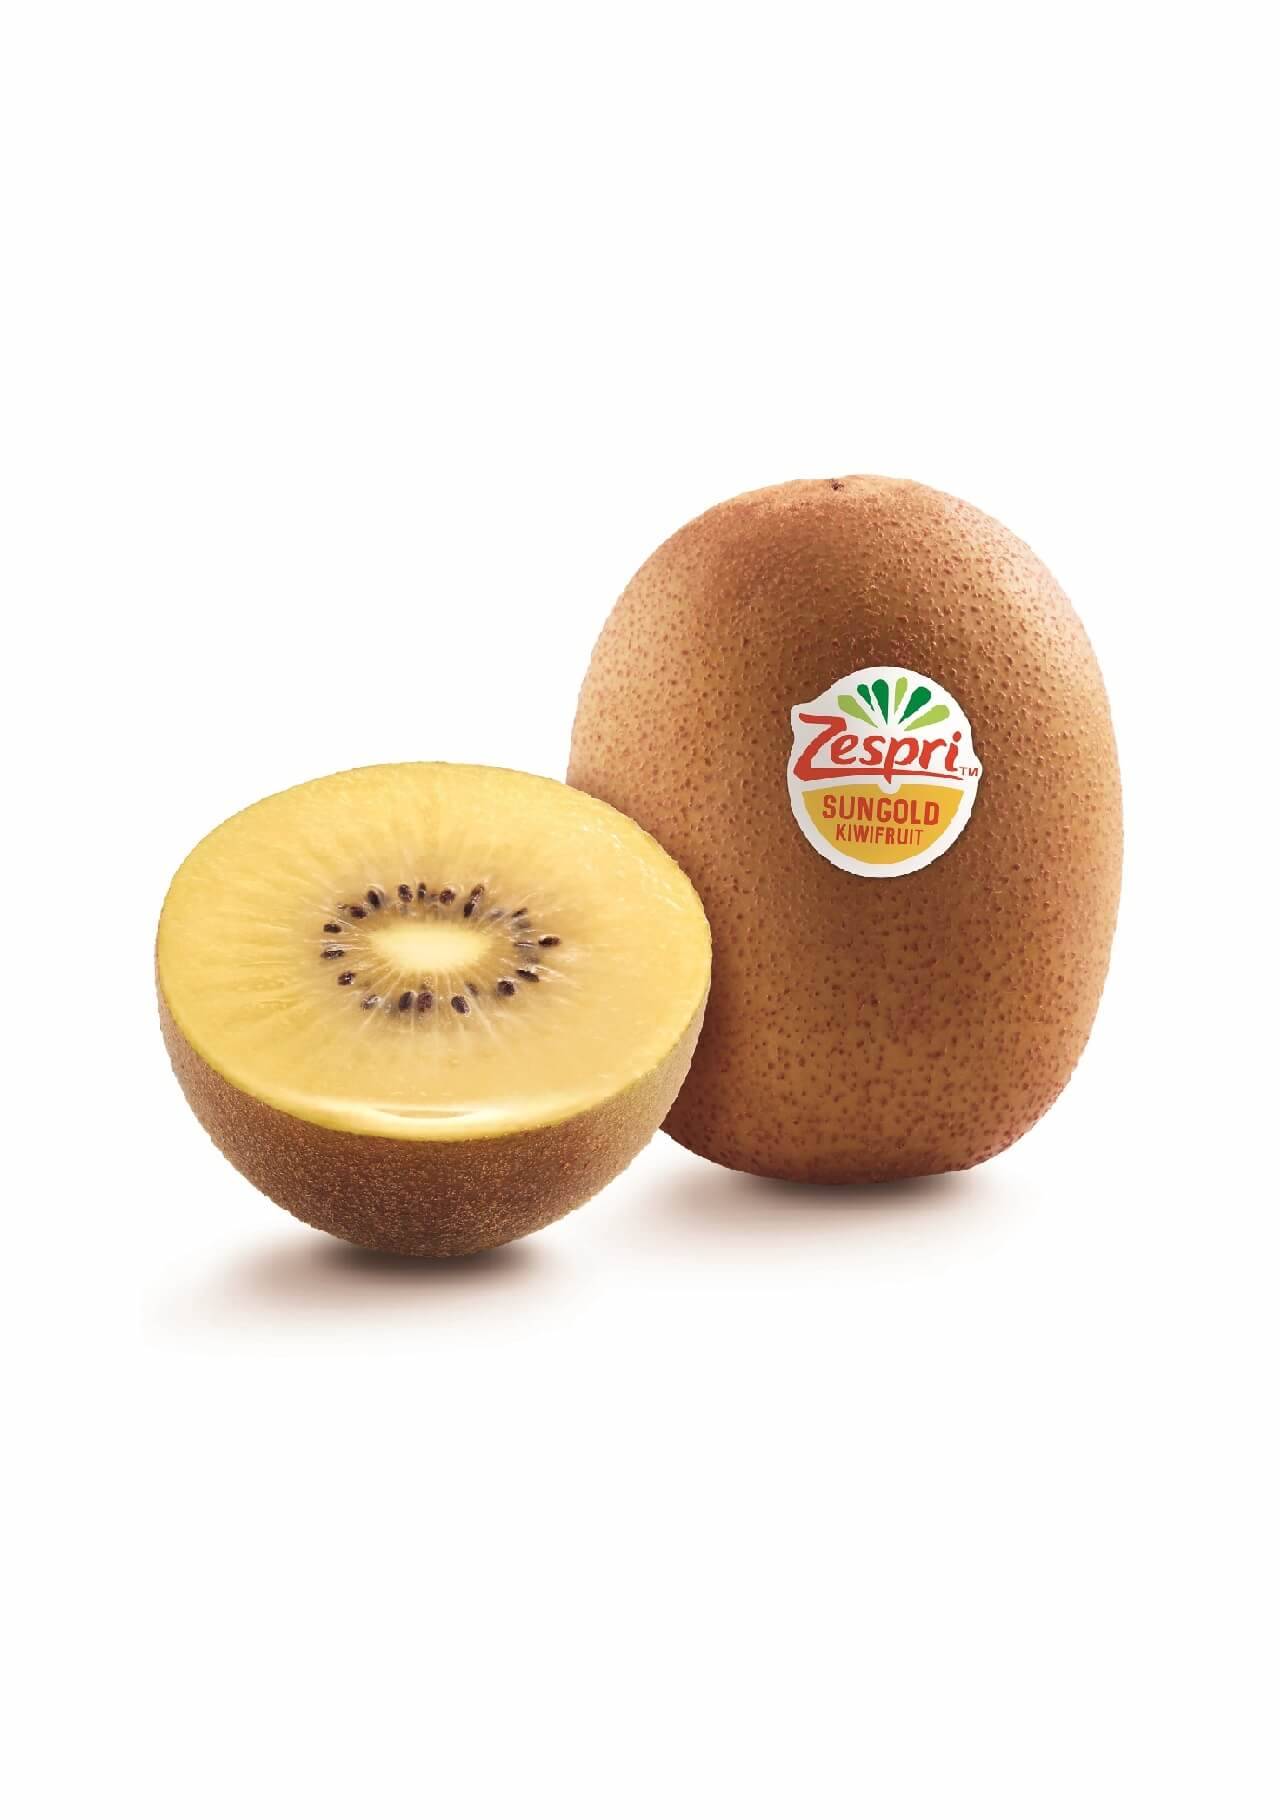 Premios CLARA Hogar y Alimentación 2021 Mejor Alimento Natural Kiwi Zespri SunGold El Corte Inglés, 2,85€